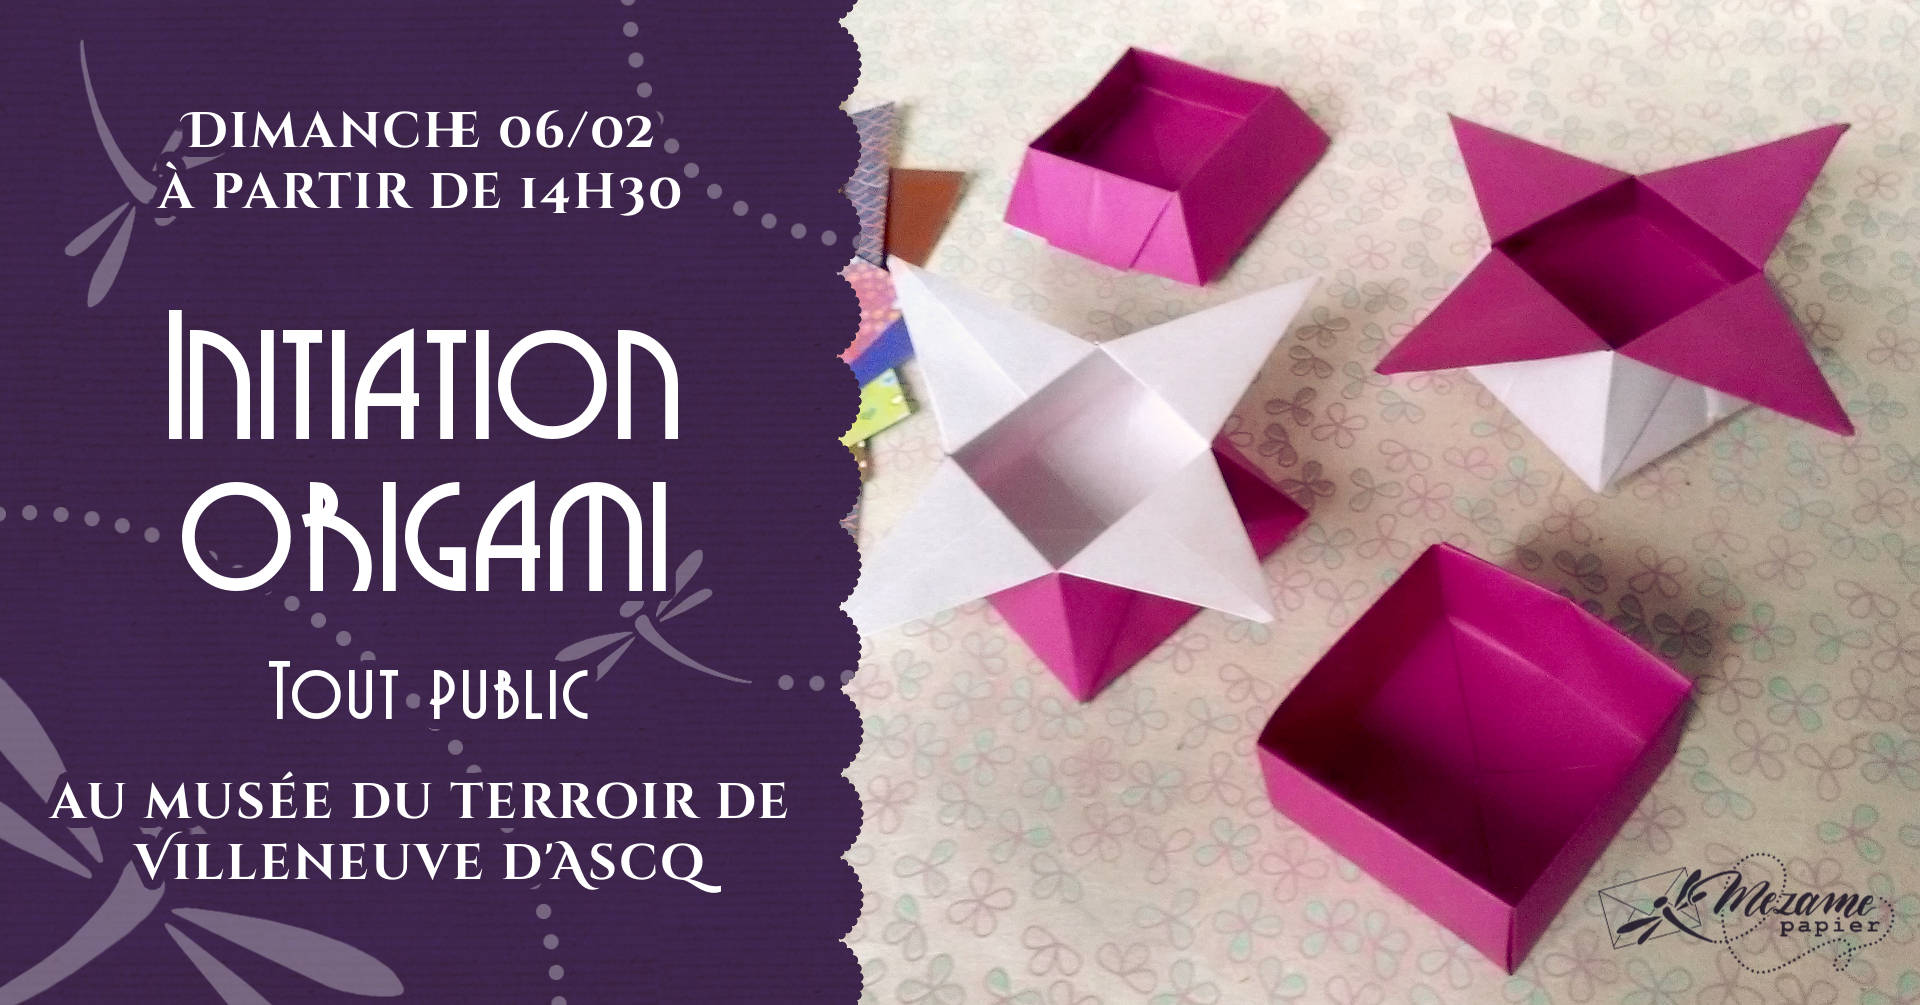 Atelier origami gratuit au musée du terroir de Villeneuve d'Ascq le dimanche 06 février 2022